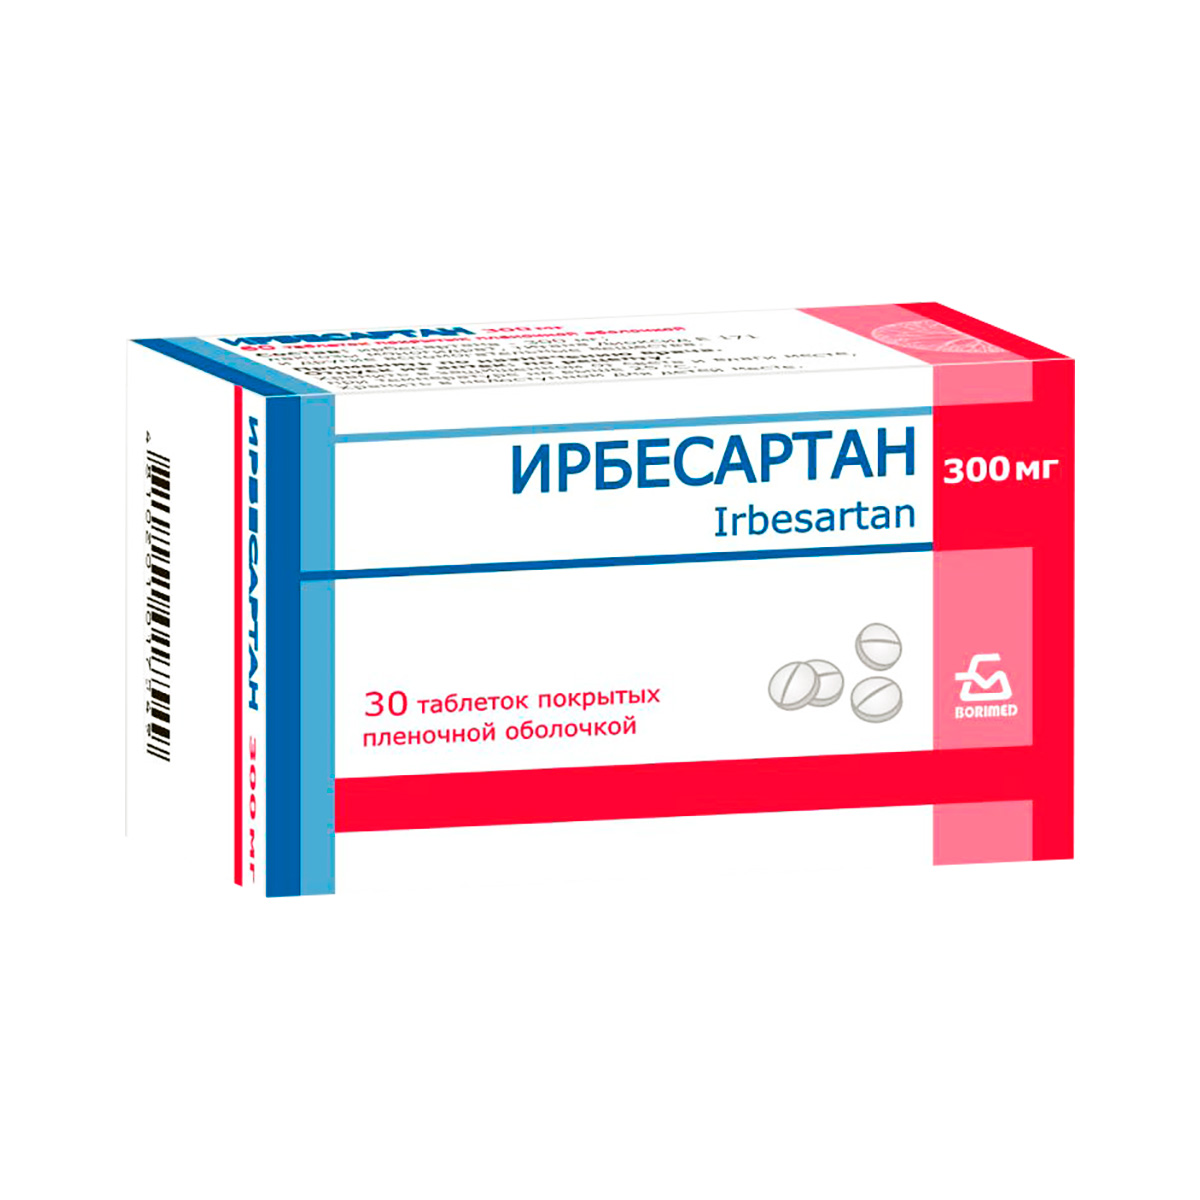 Ирбесартан 300 мг таблетки покрытые пленочной оболочкой 30 шт